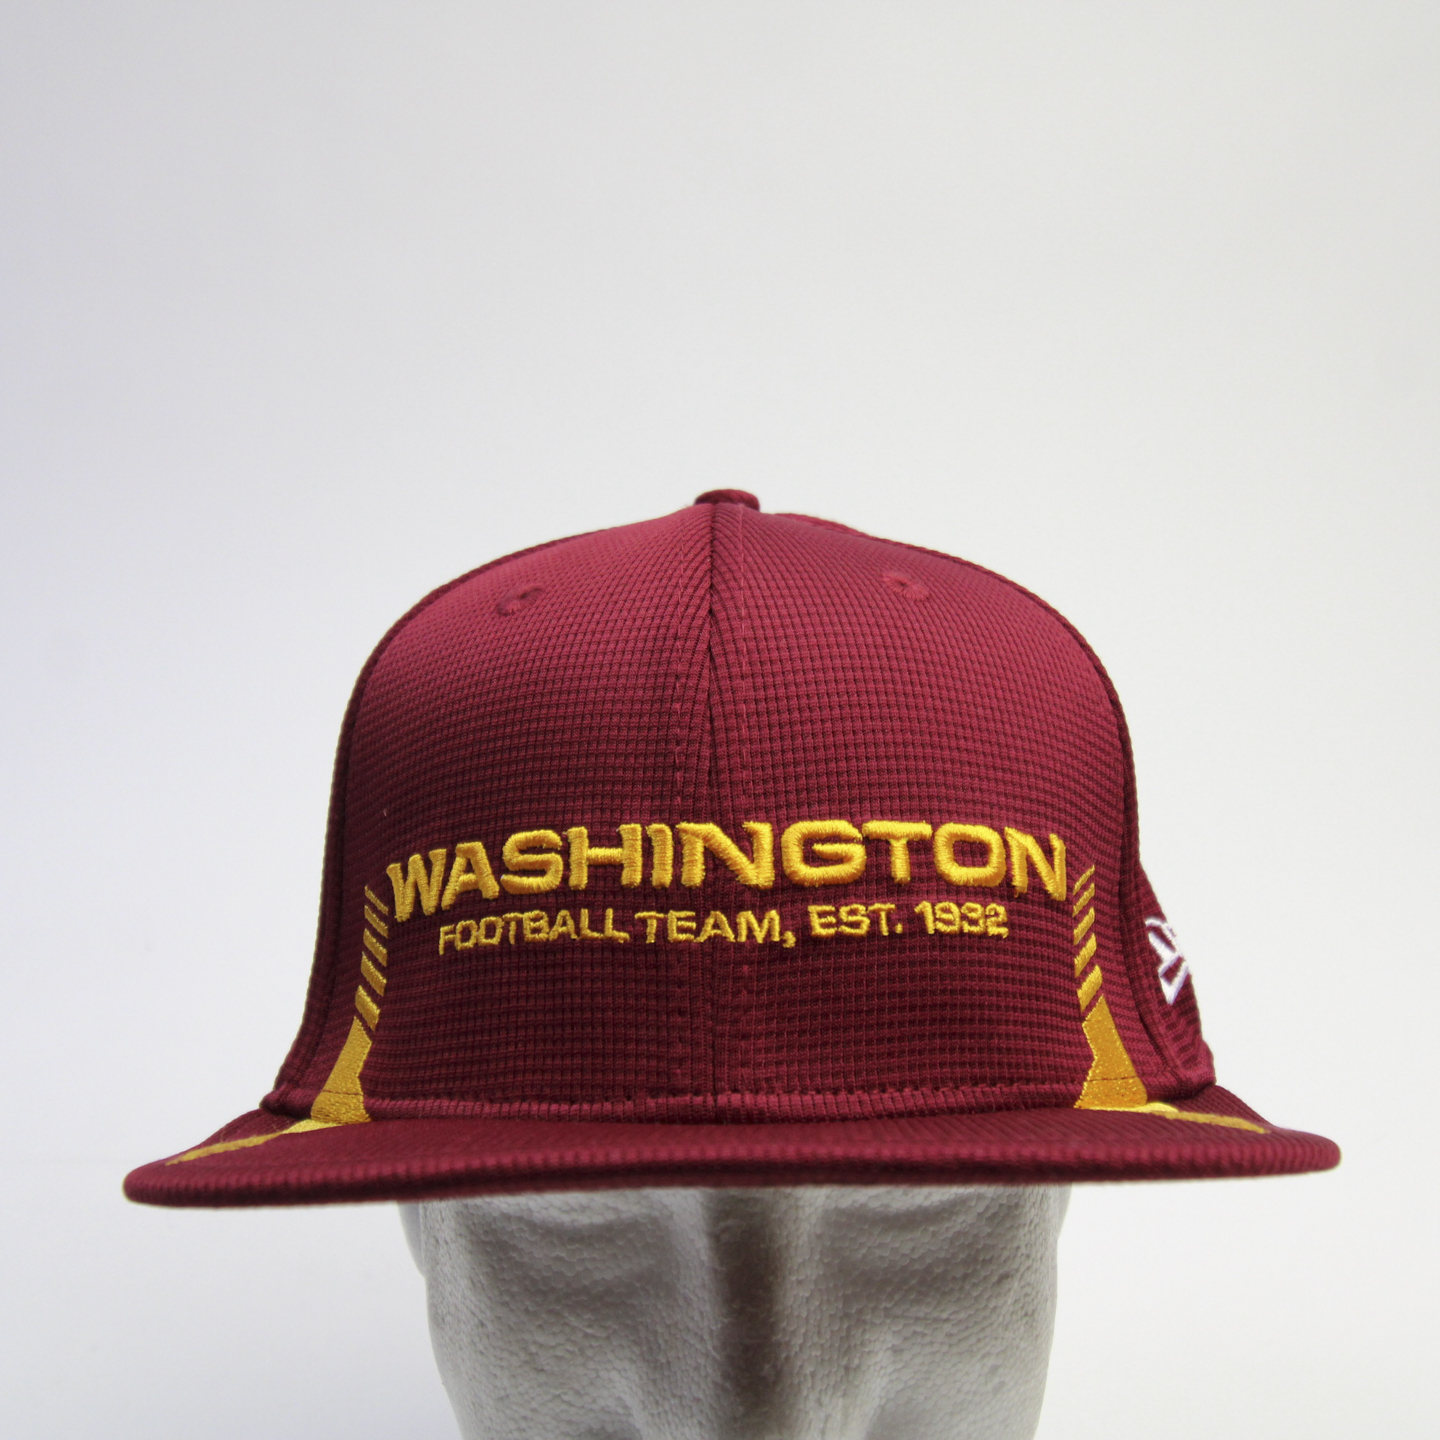 Футбольная шляпа. Шапка с орлом футбольная Вашингтон. Back hat